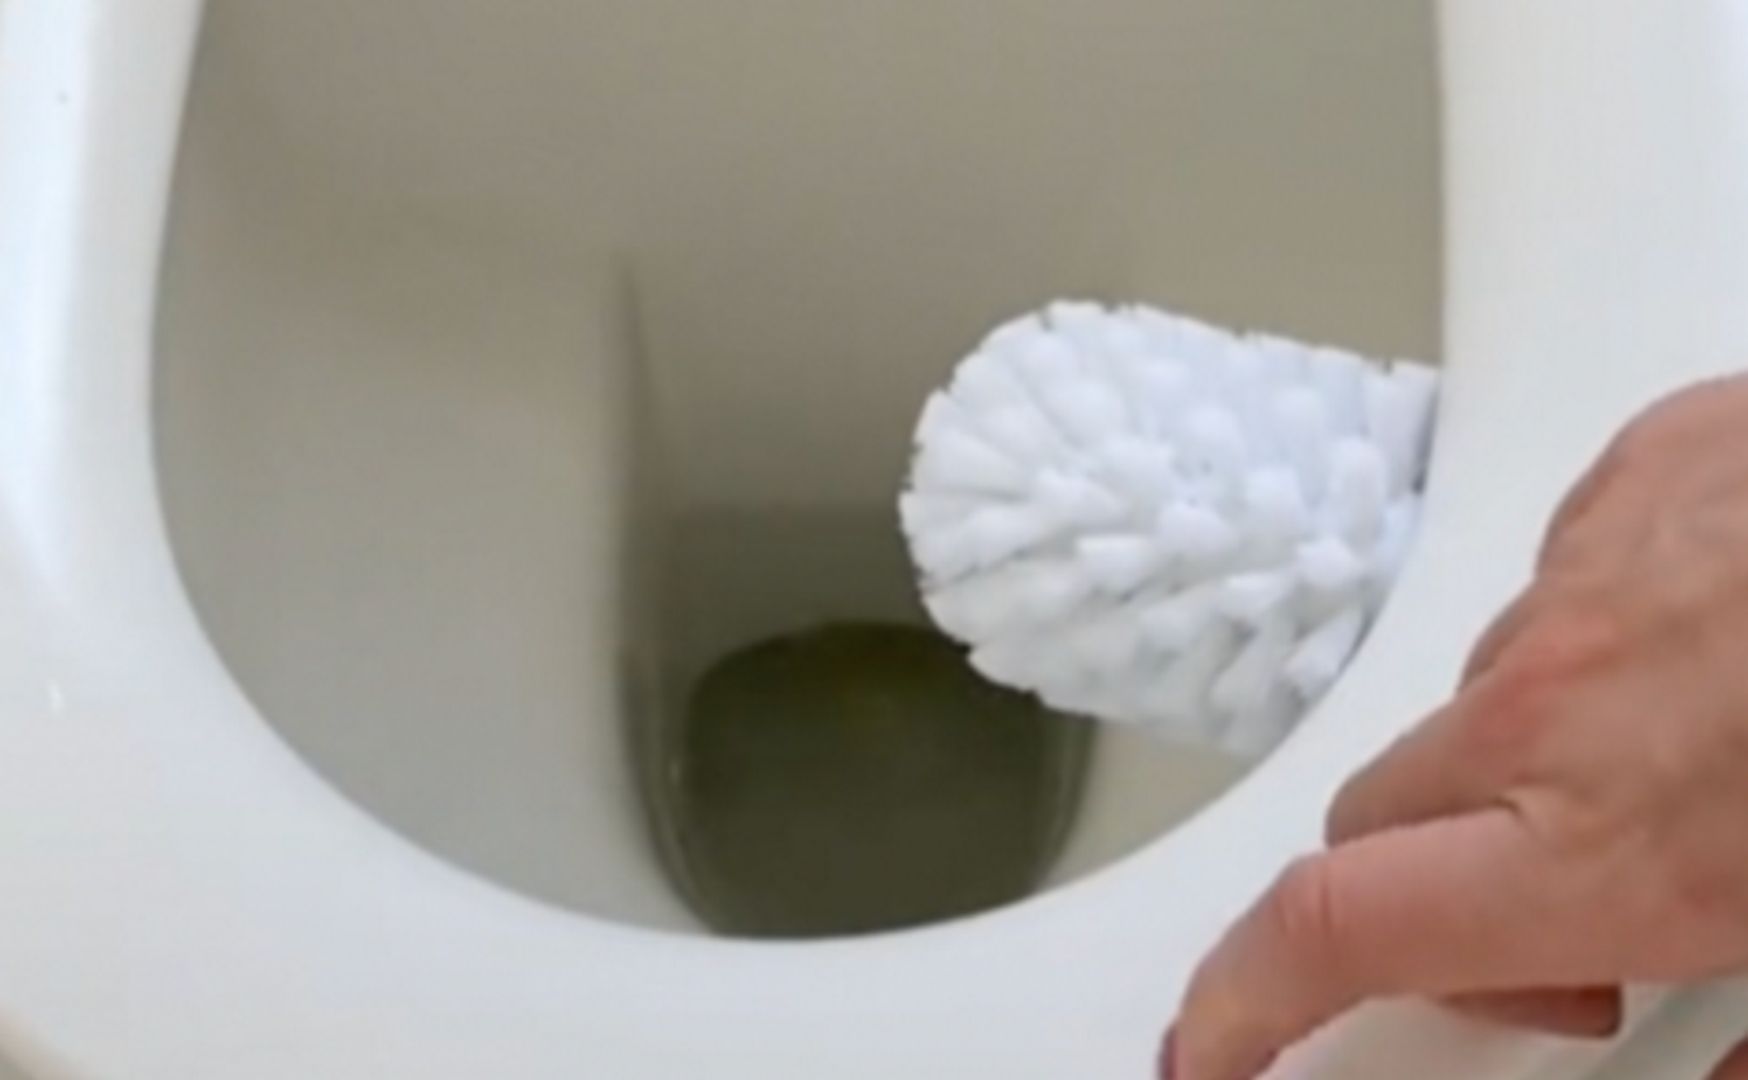 Trik na mycie szczotki do WC. Ta metoda zaskoczyła internautów